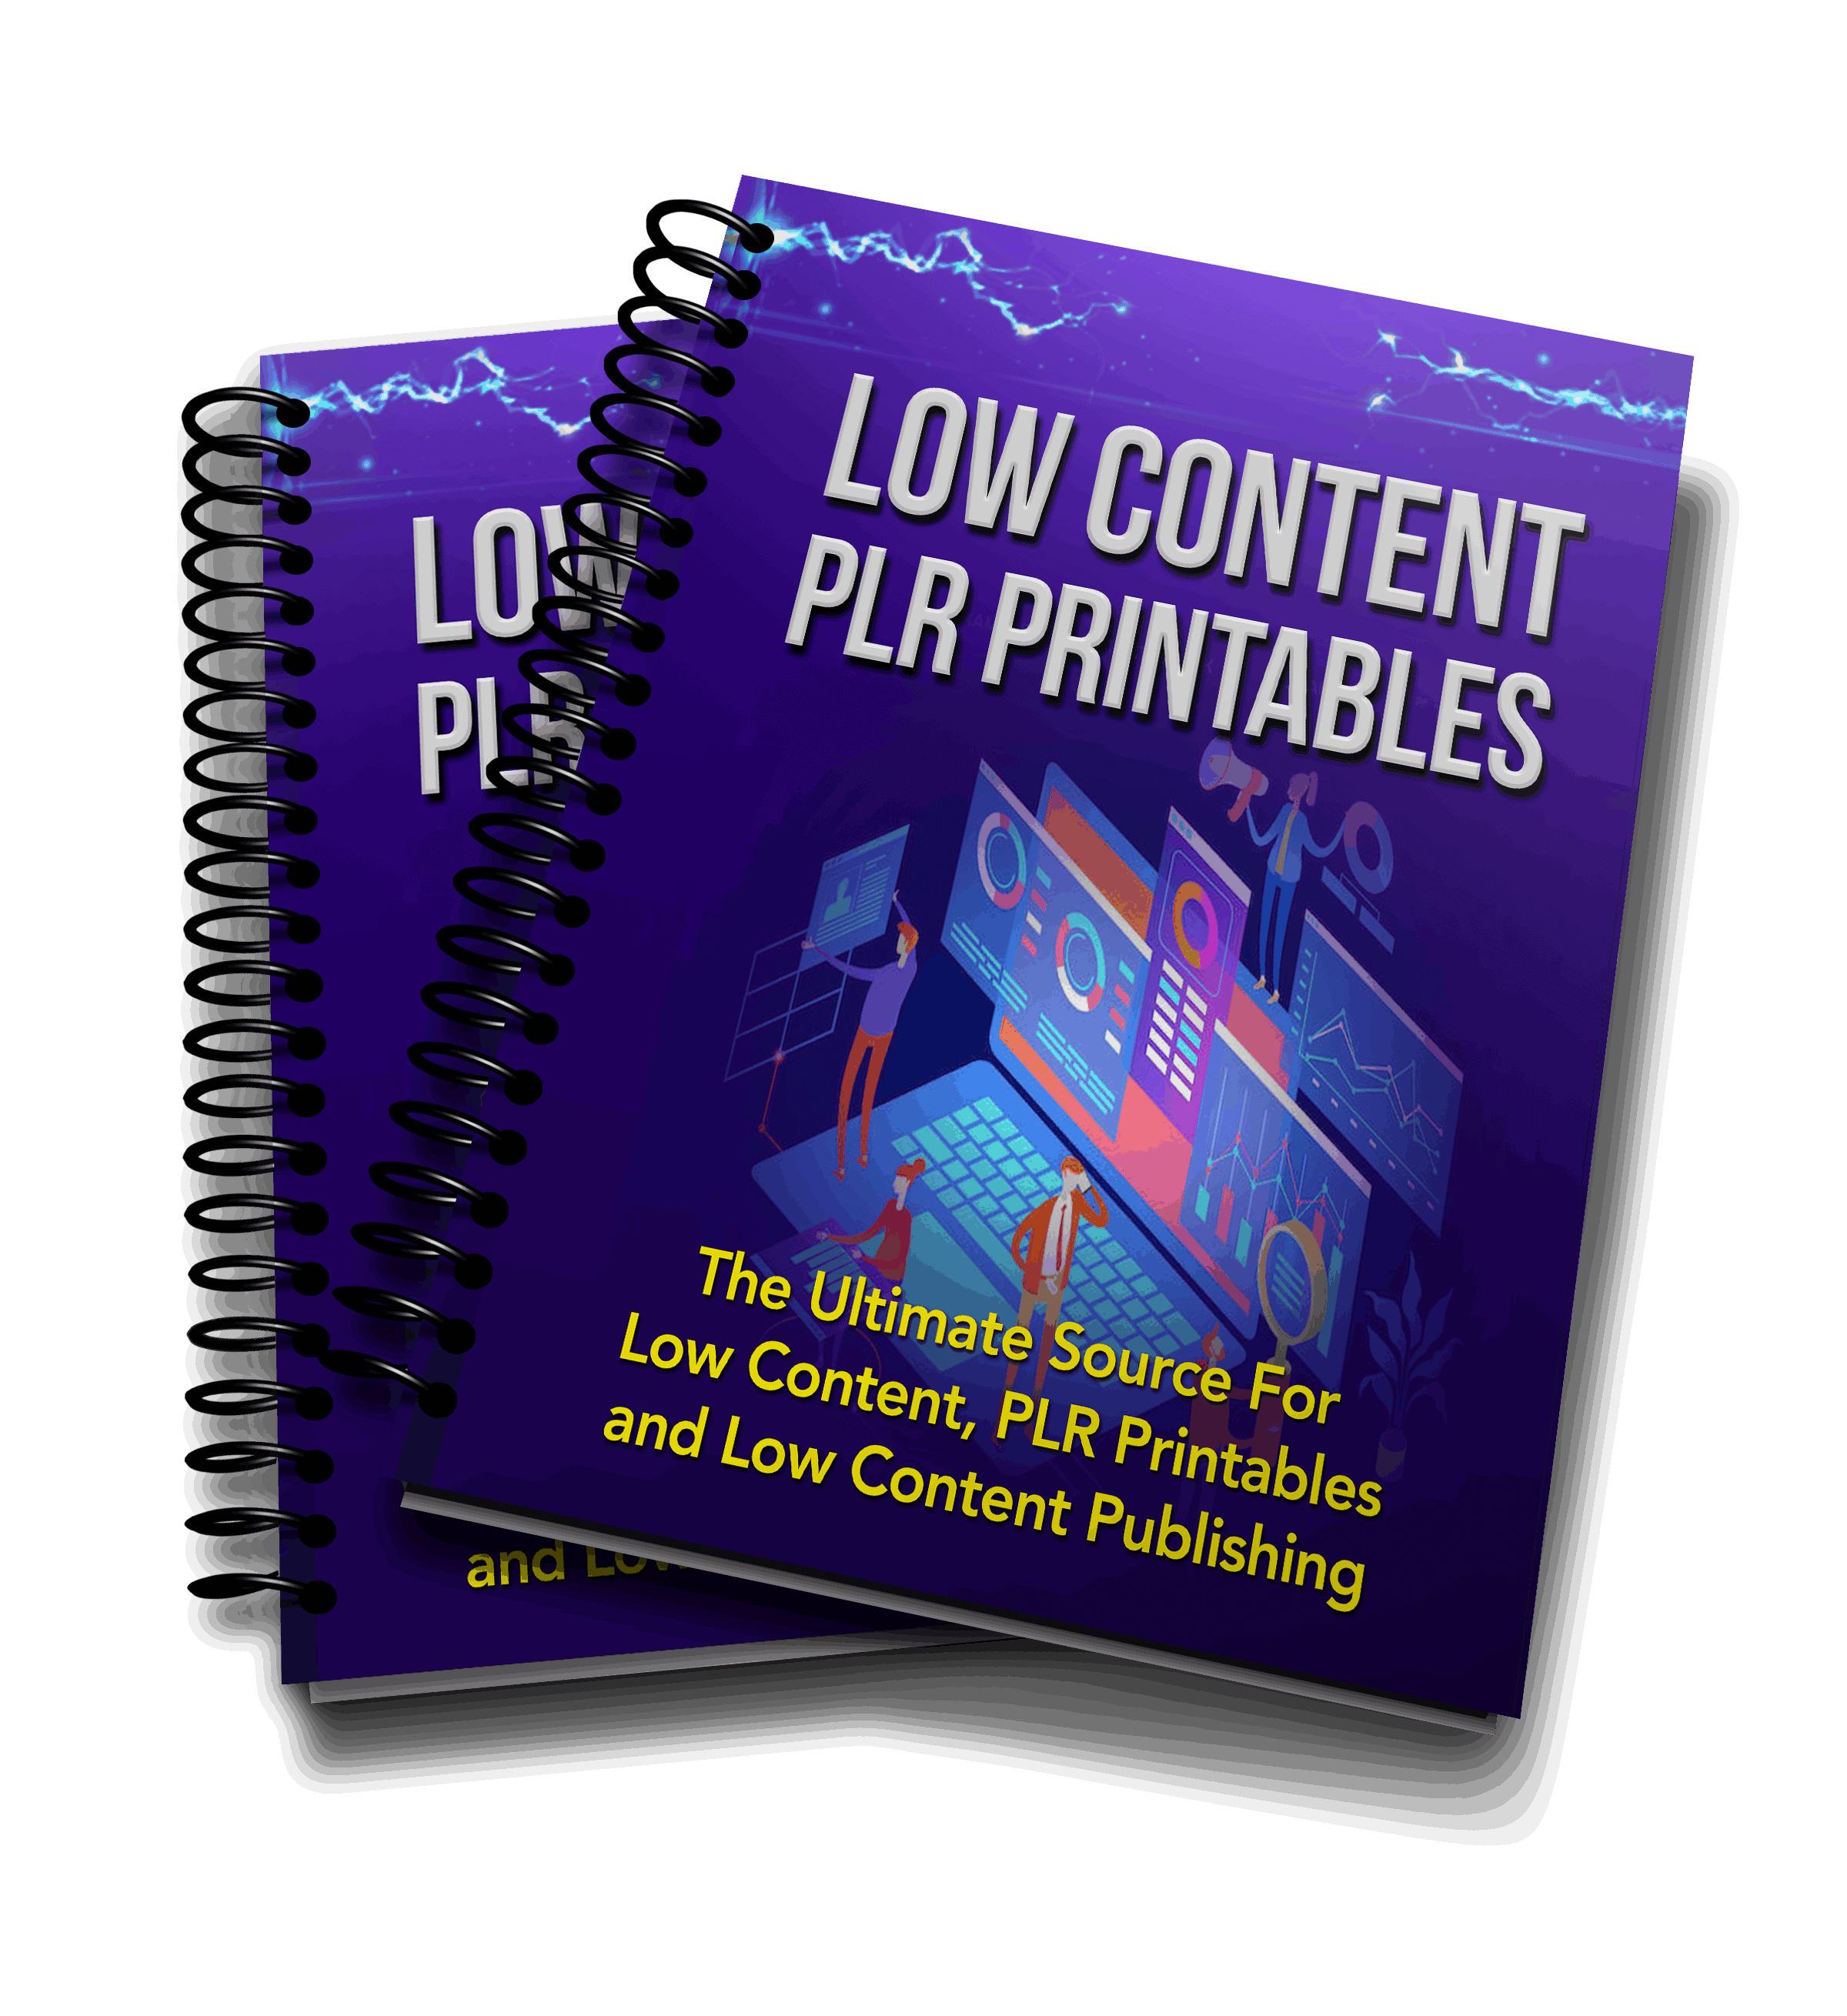 Low Content PLR Printables